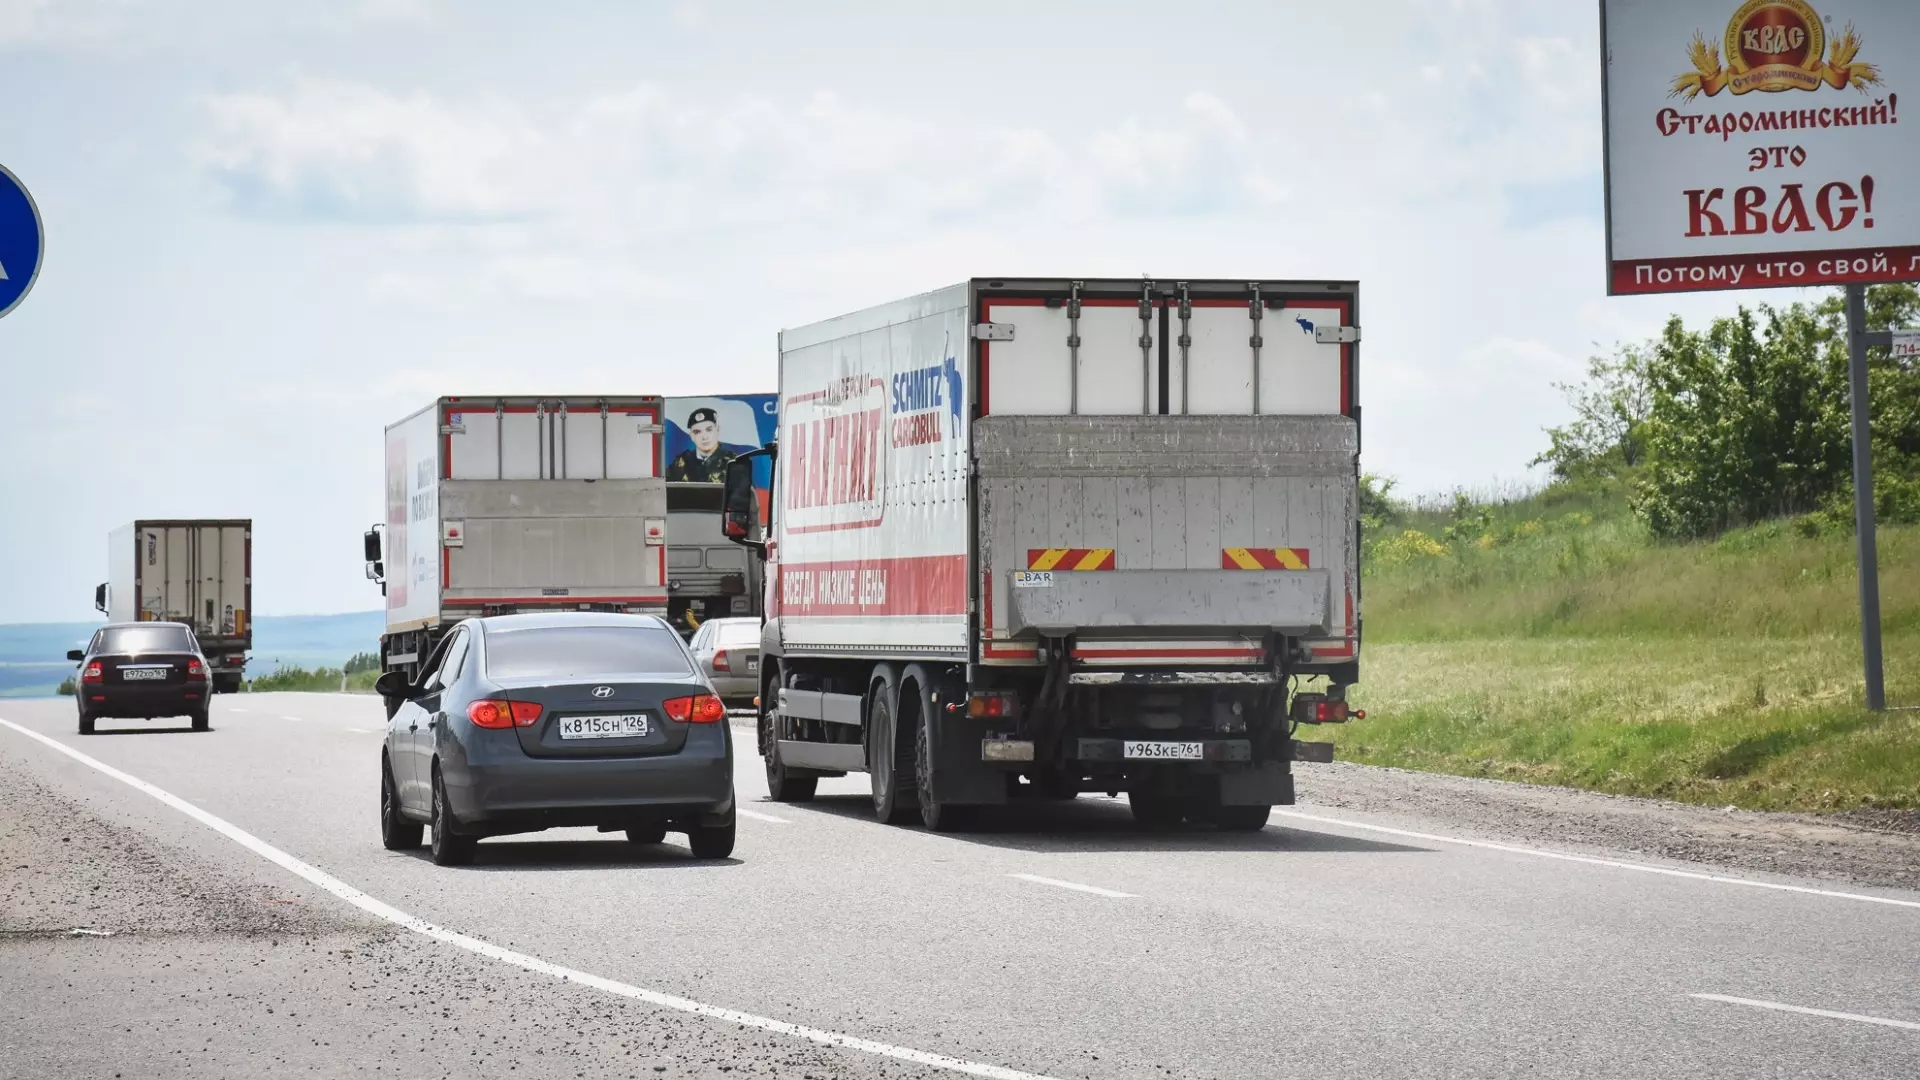 Два грузовика столкнулись на трассе в Челябинской области